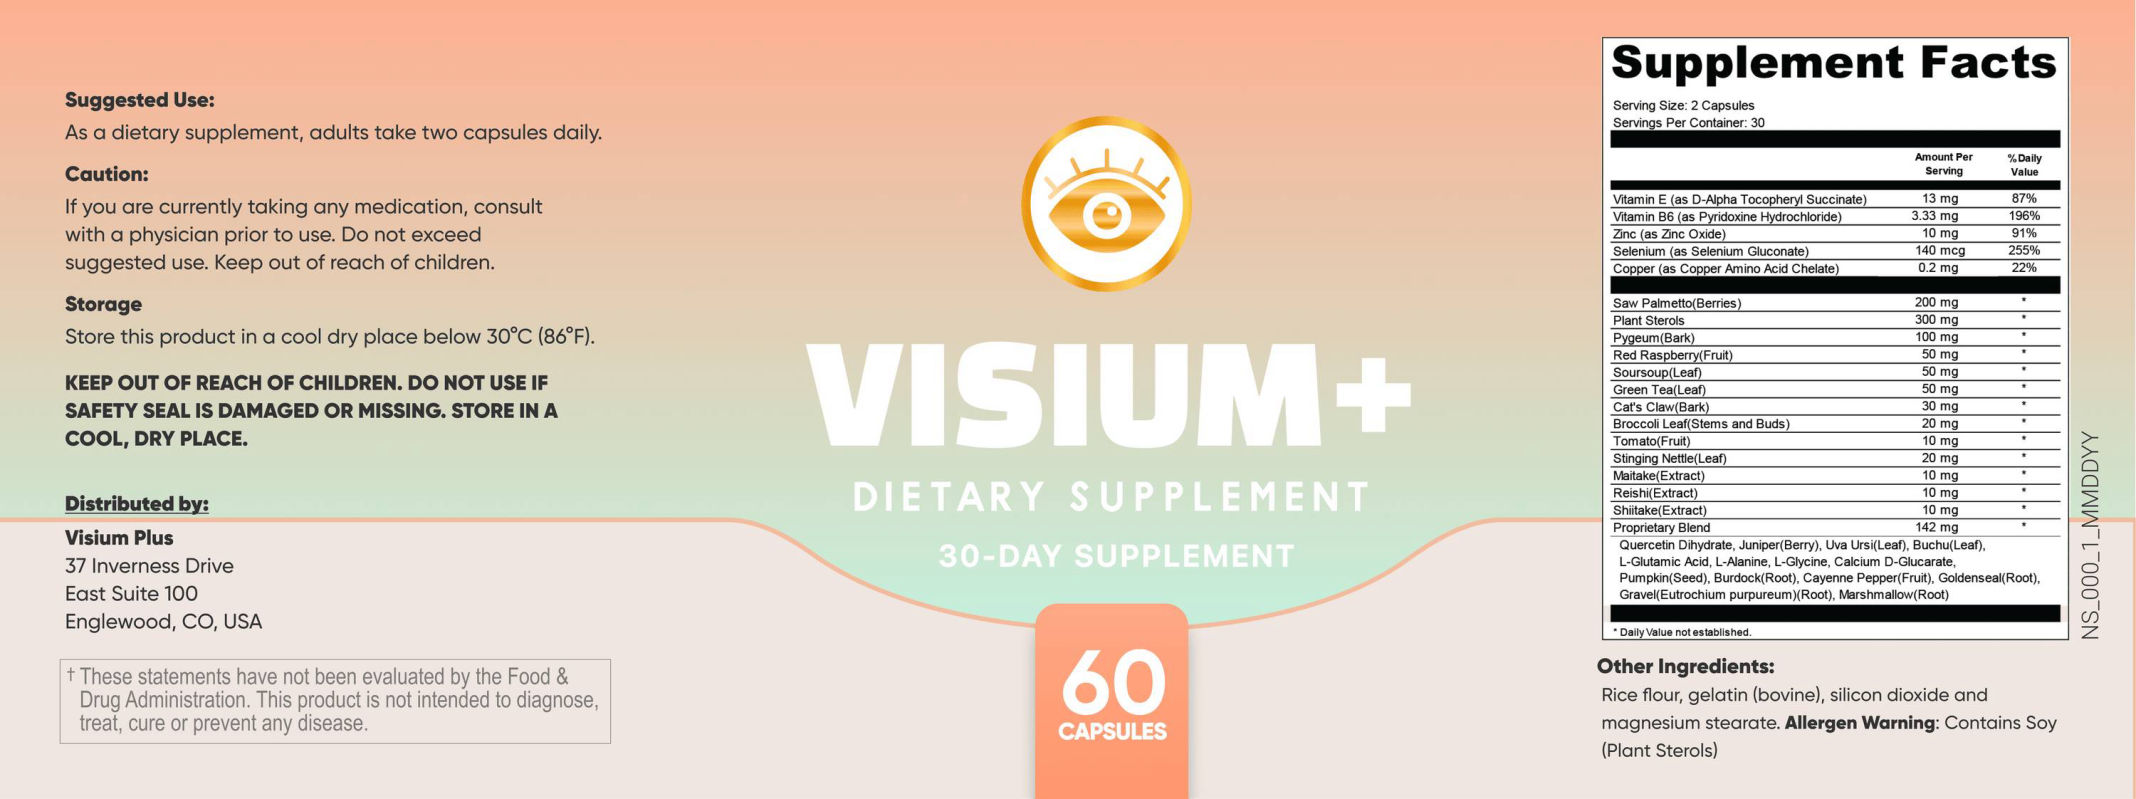 Visium Plus supplement facts